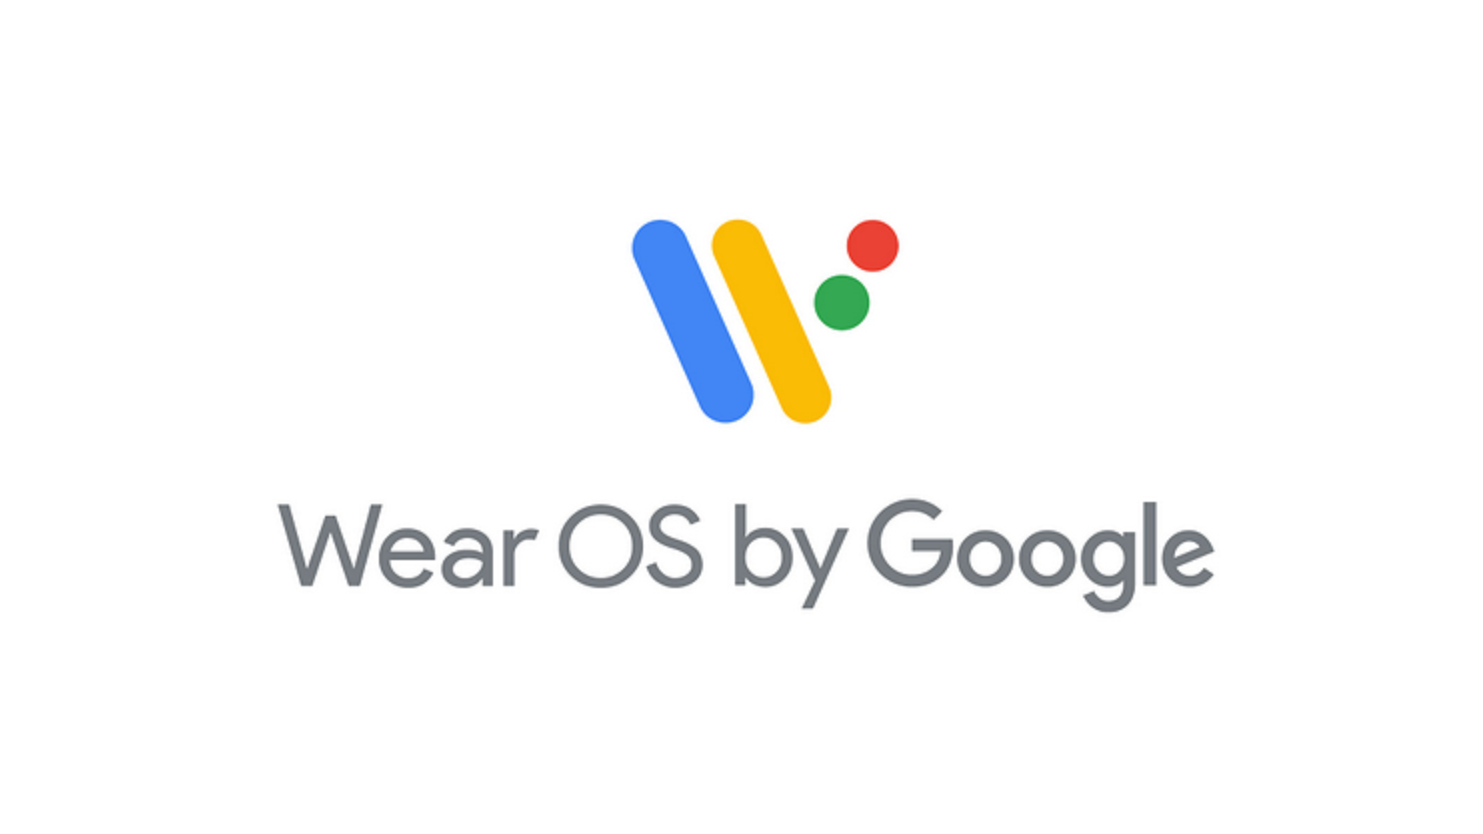 Google Wear os. Wear os by Google. Google Wear os Samsung телевизор. WEAROS logo. Google wear